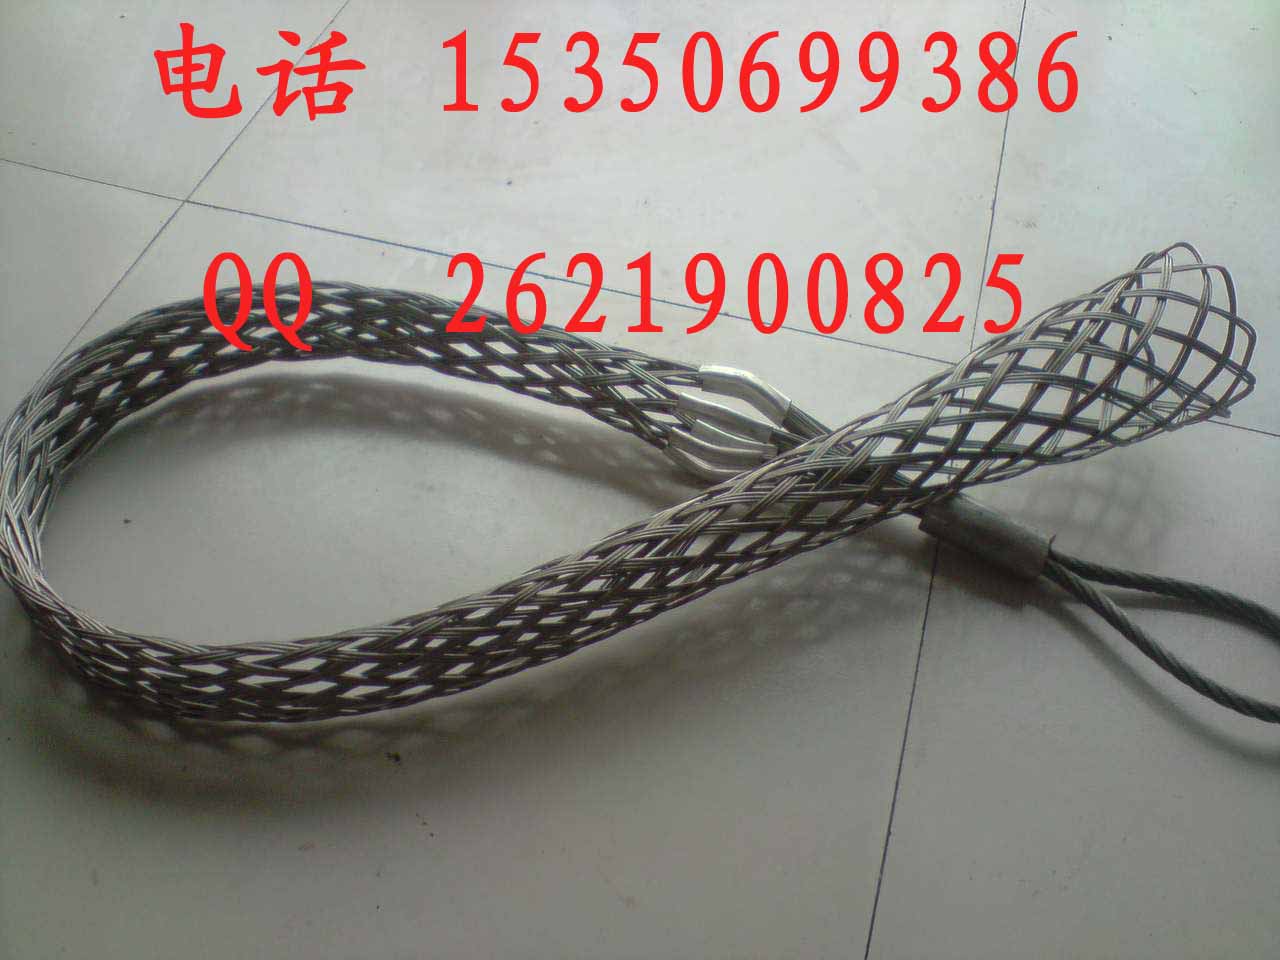 电缆网套 网套连接器 生产导线网套 